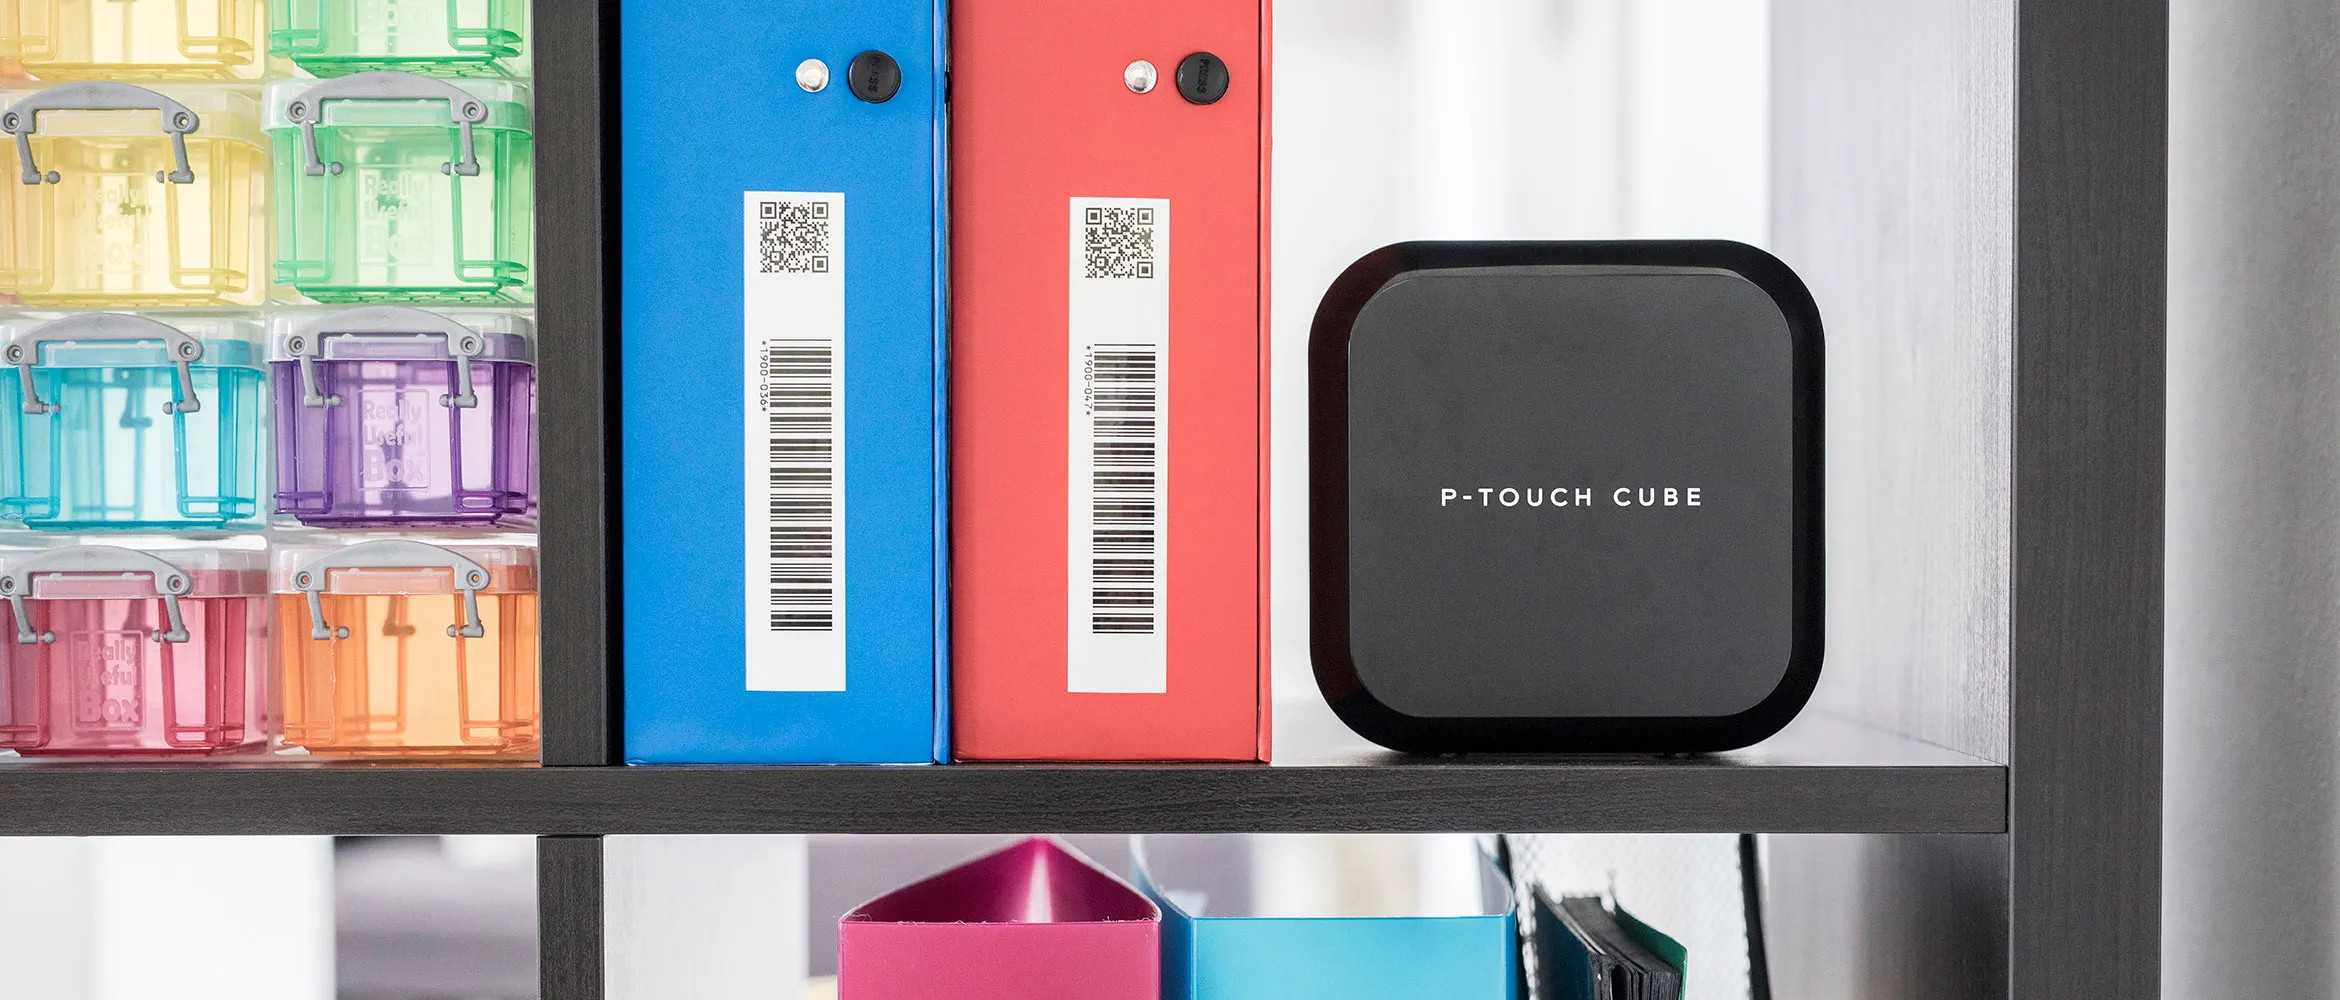 Etichettatrice Brother P-Touch Cube Plus su uno scaffale con raccoglitori etichettati